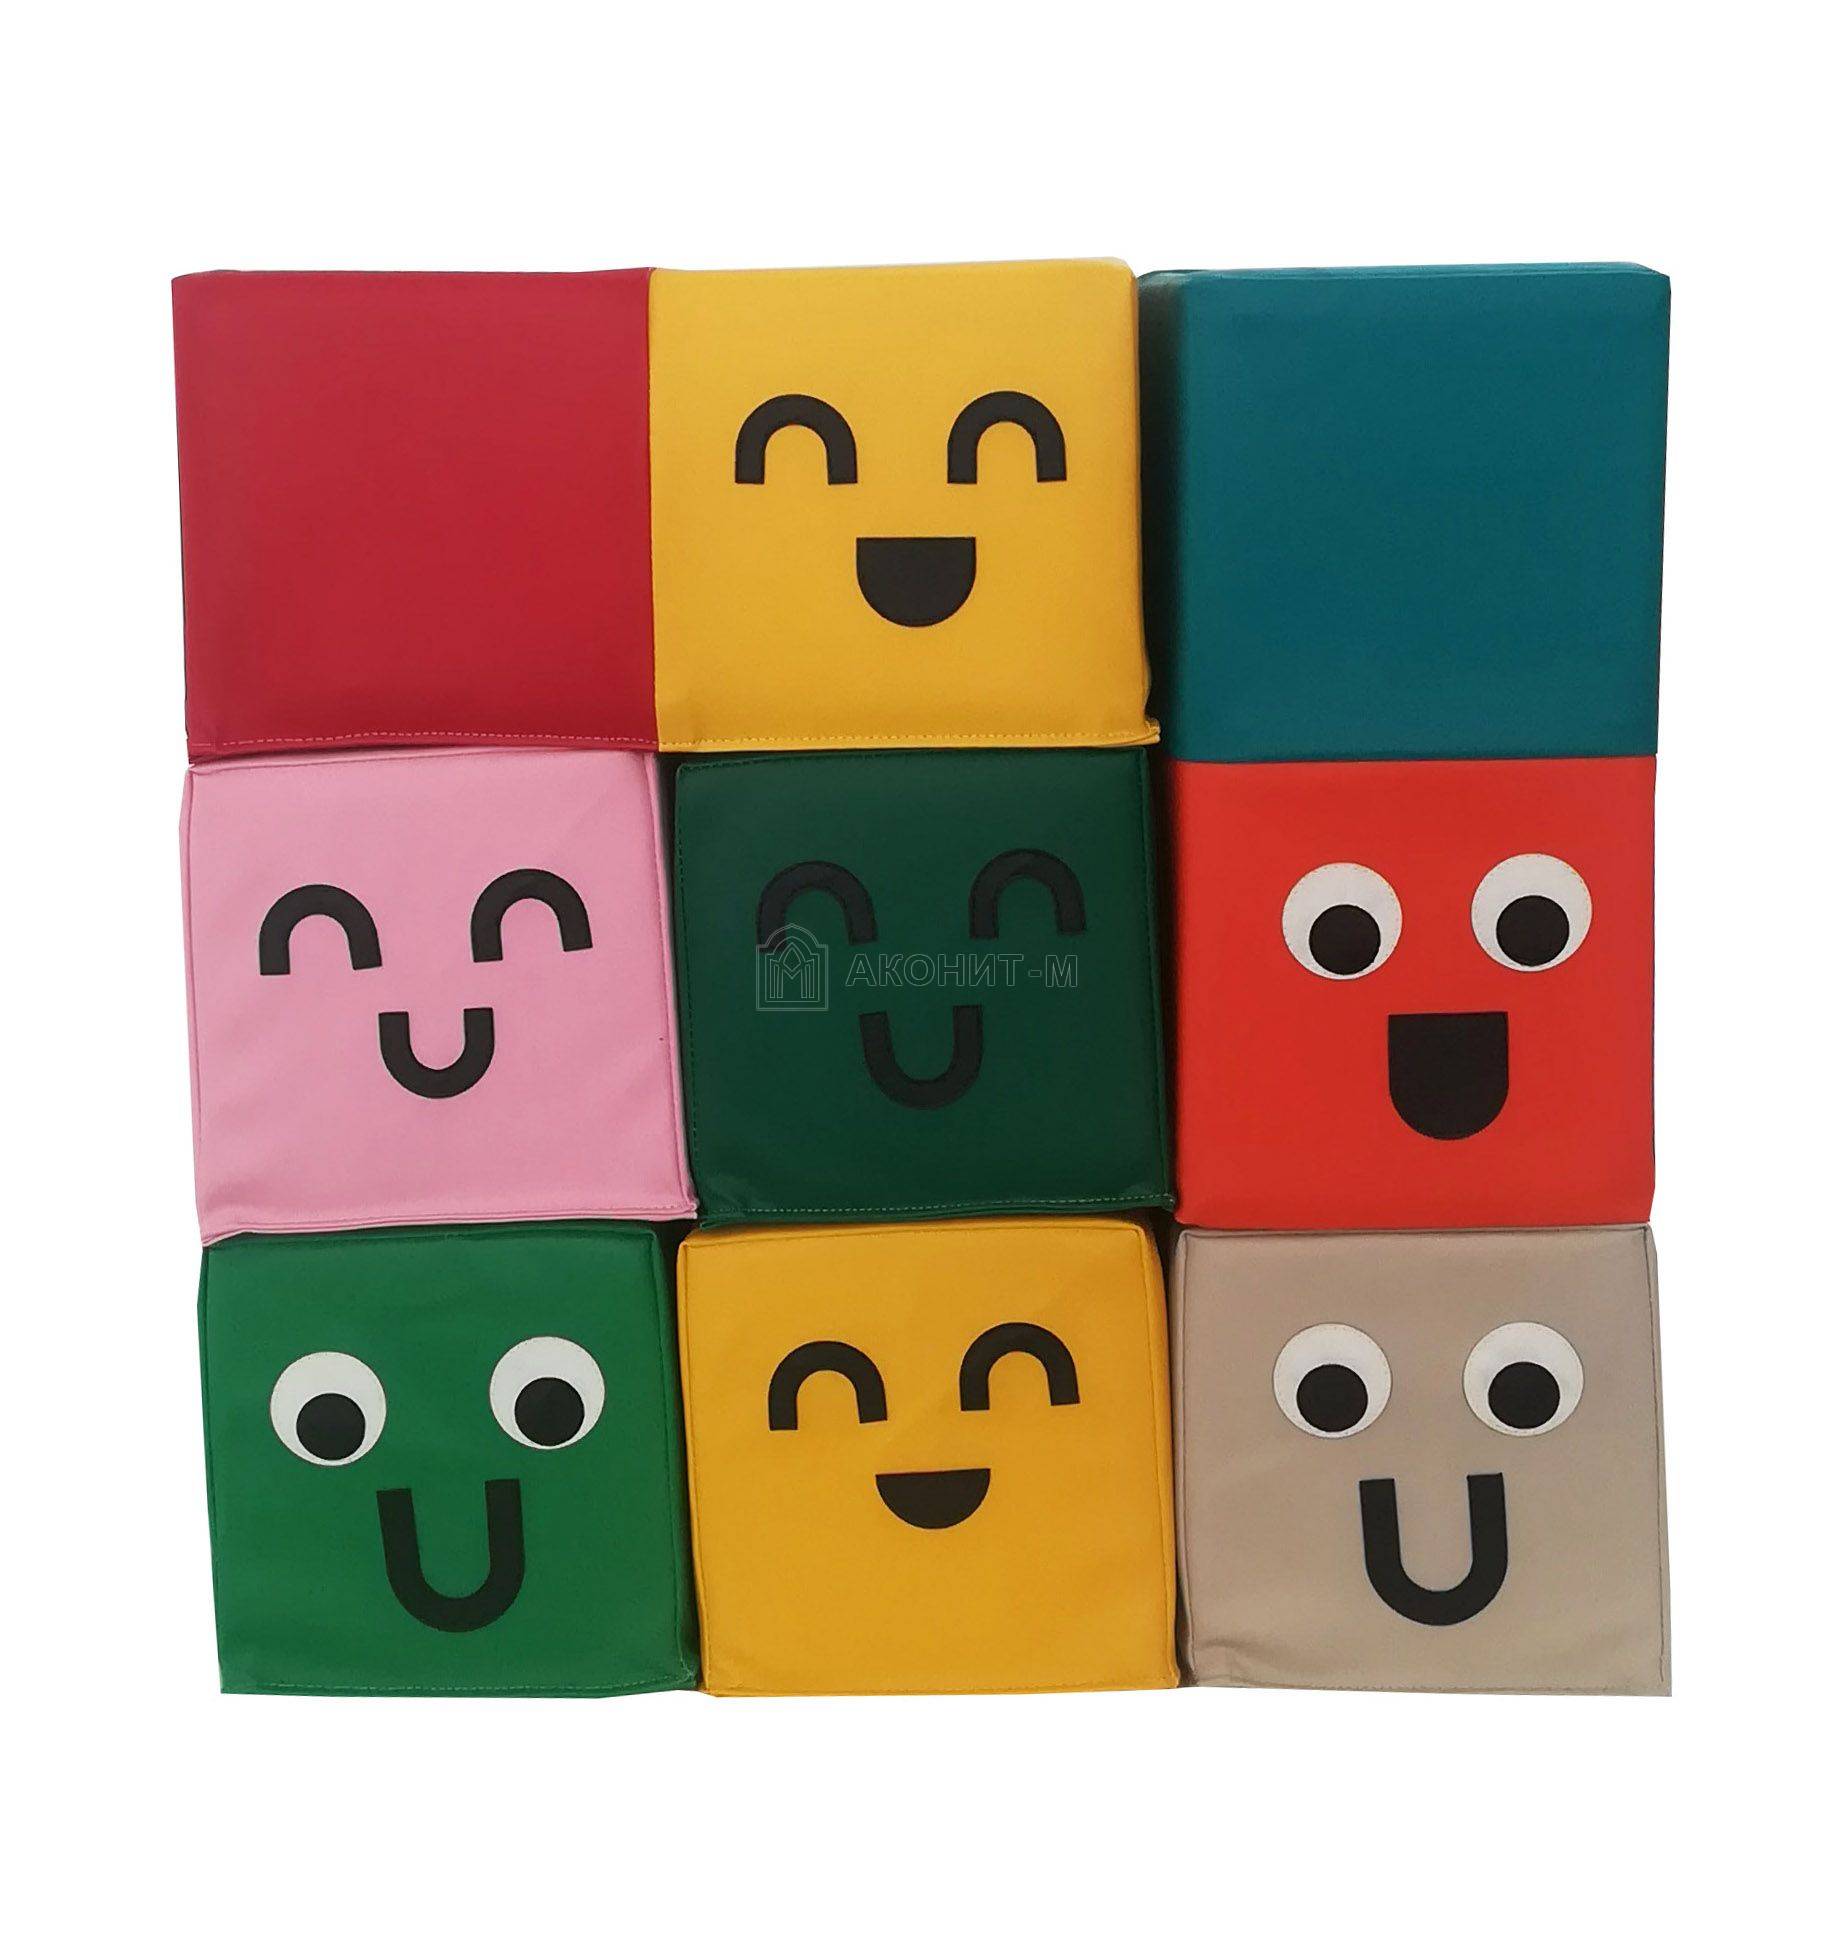 Модульный набор "Разноцветные кубики" 13 модулей